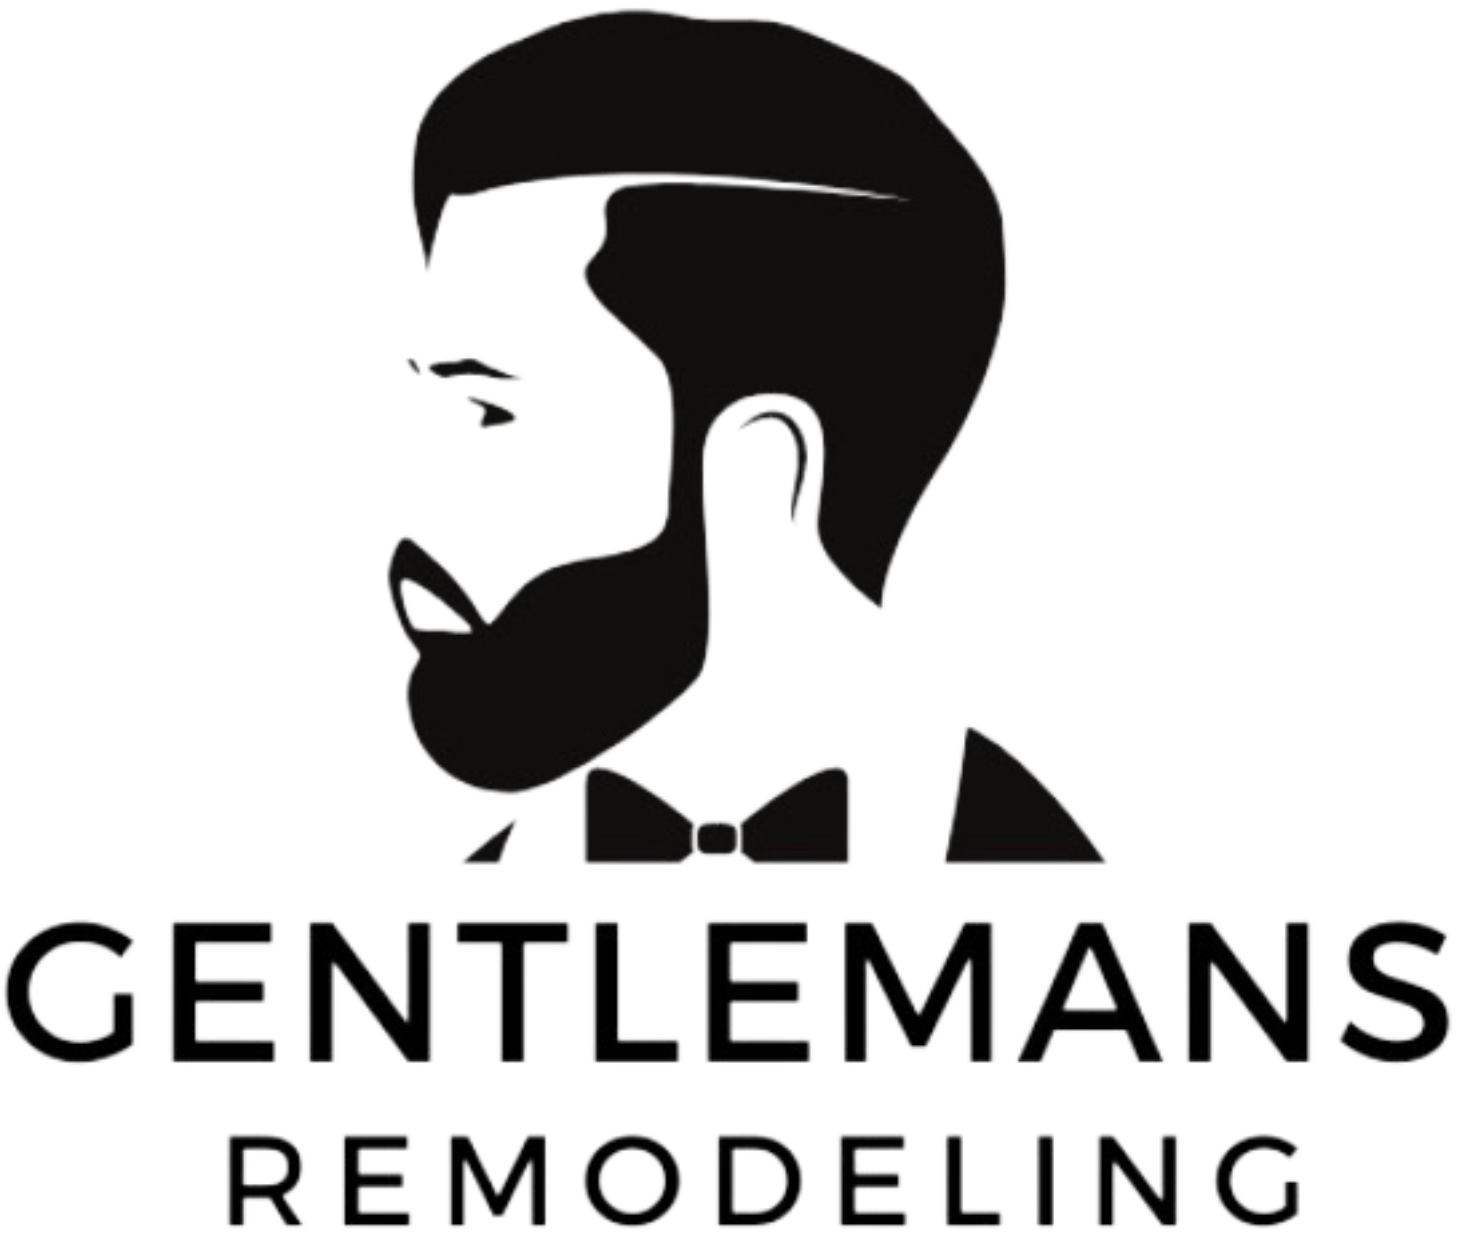 Gentlemans Remodeling